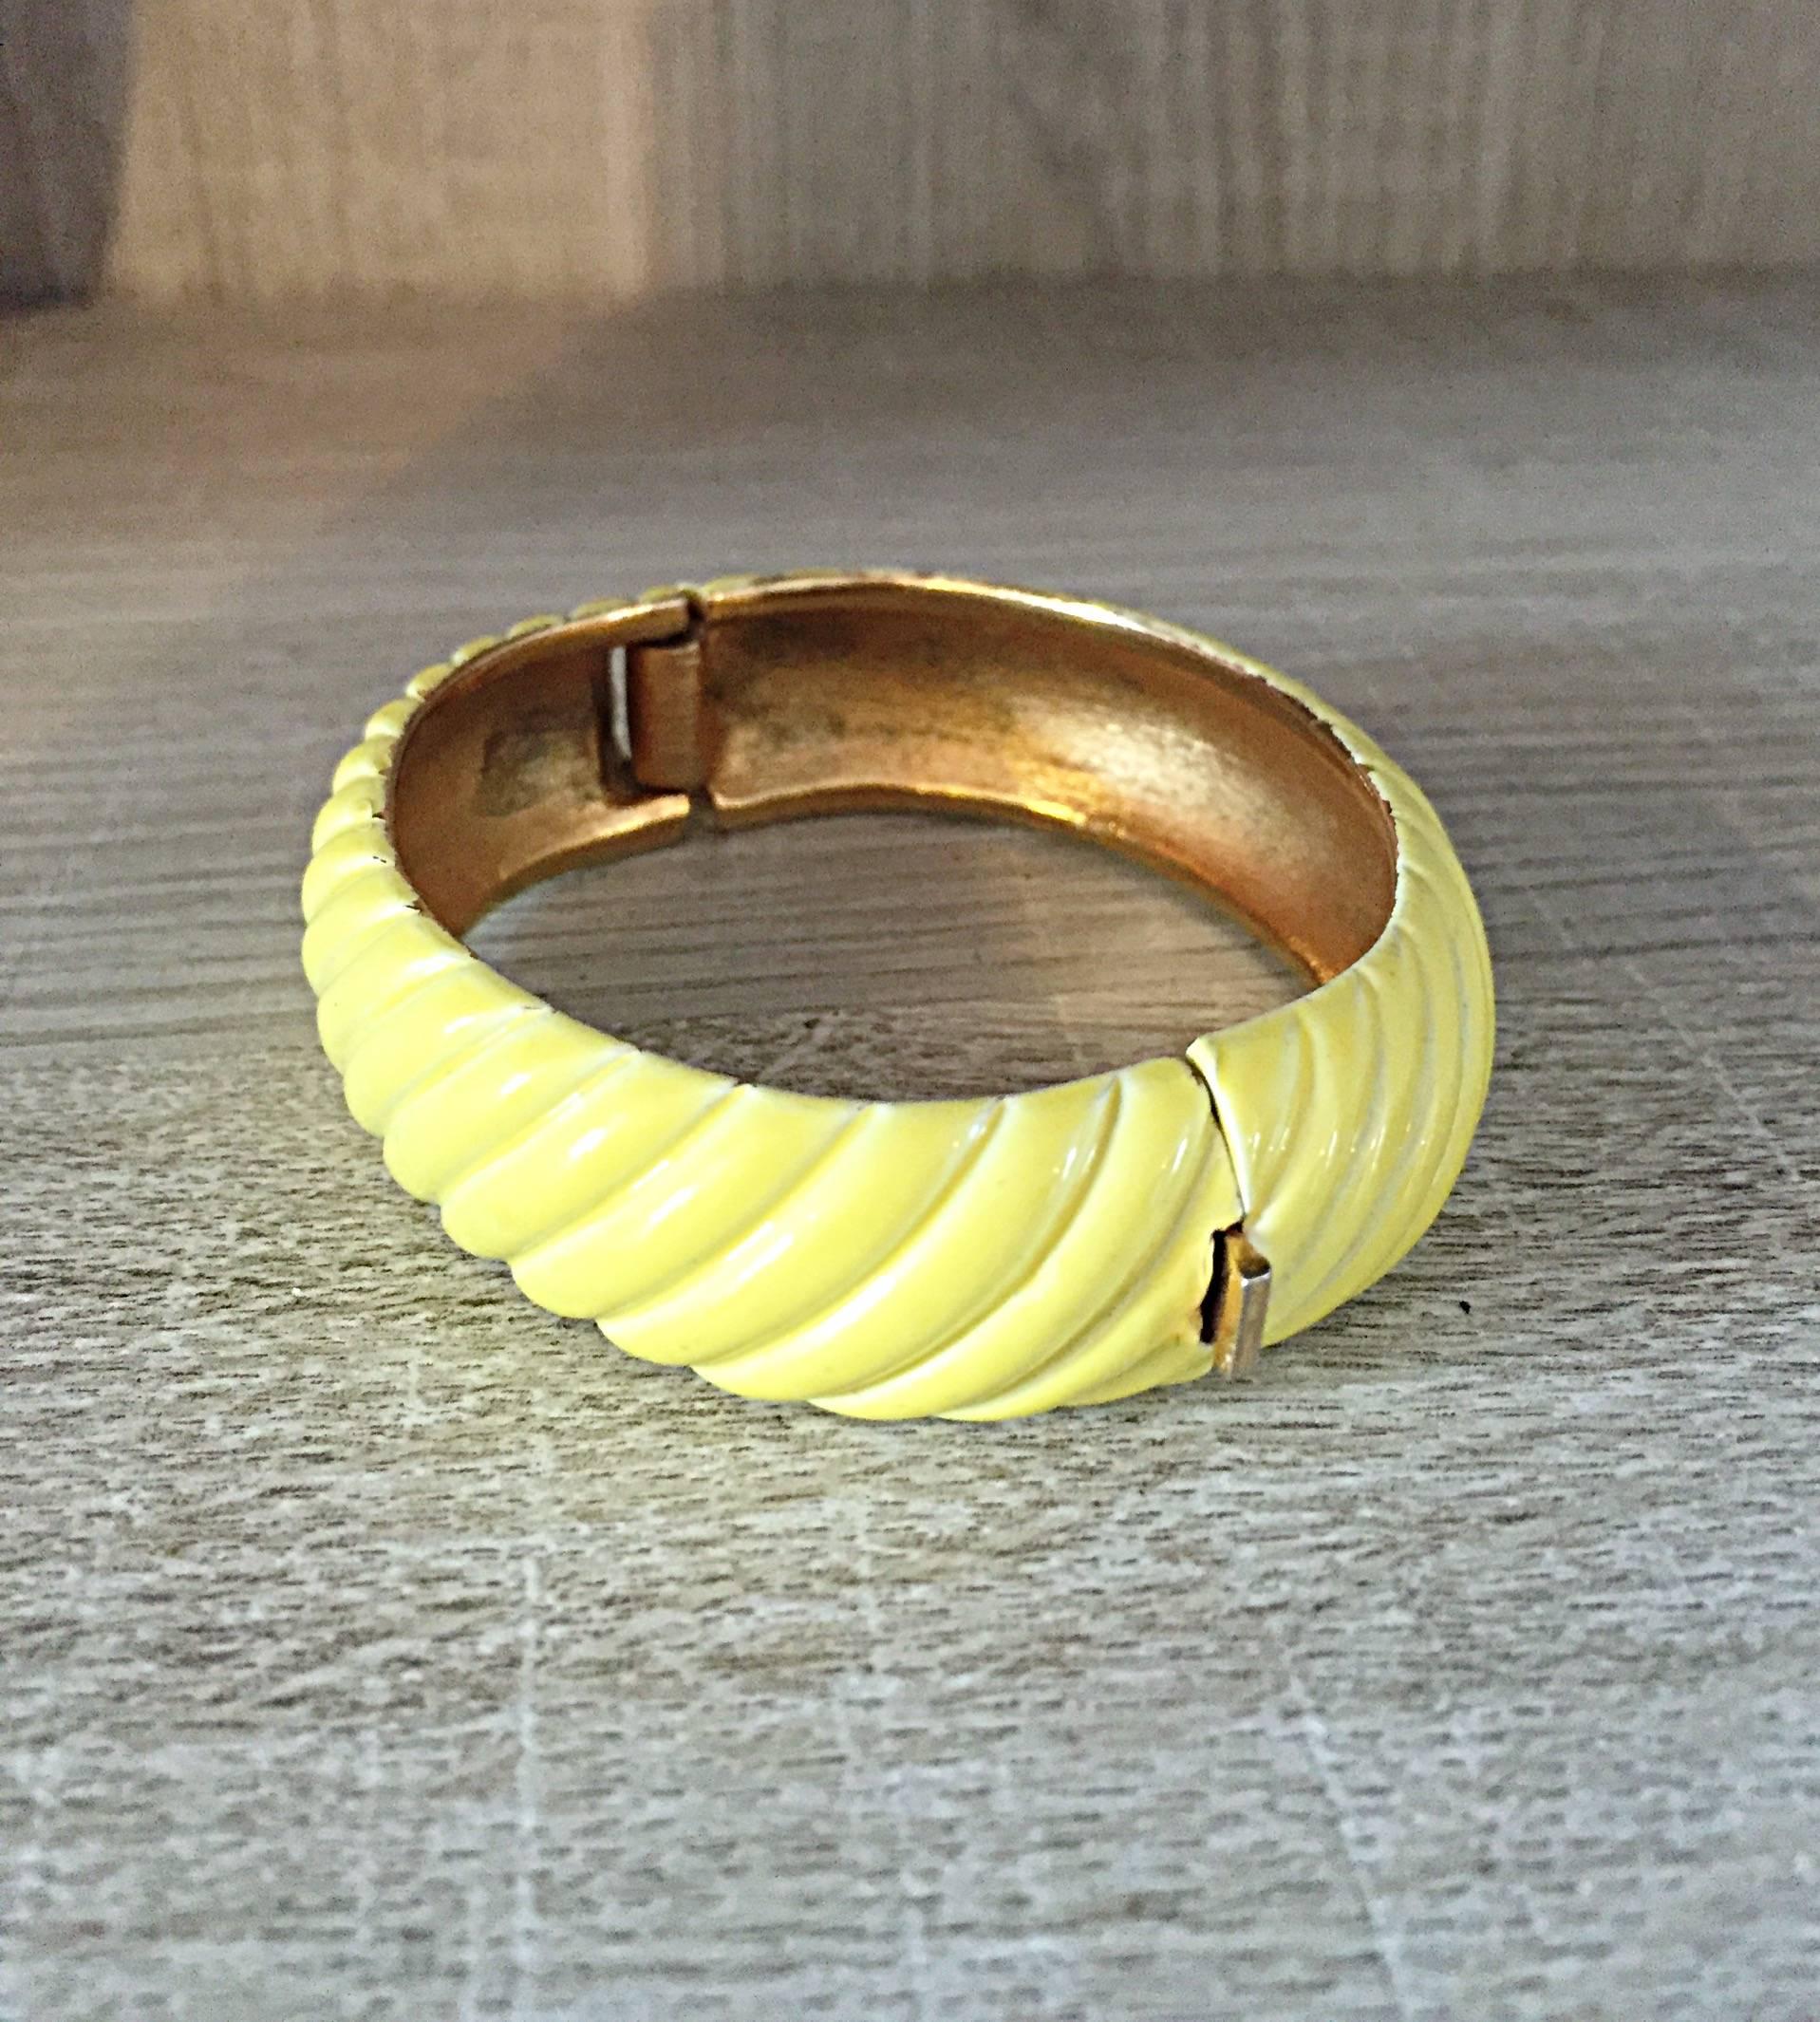 Adorable bracelet vintage des années 1960 TRIFARI jaune canari et or gravé ! Présente des gravures obliques tout au long de l'ouvrage. Fermeture à charnière. L'intérieur est d'un bel or. Peut facilement être habillé ou non. Il est superbe seul ou